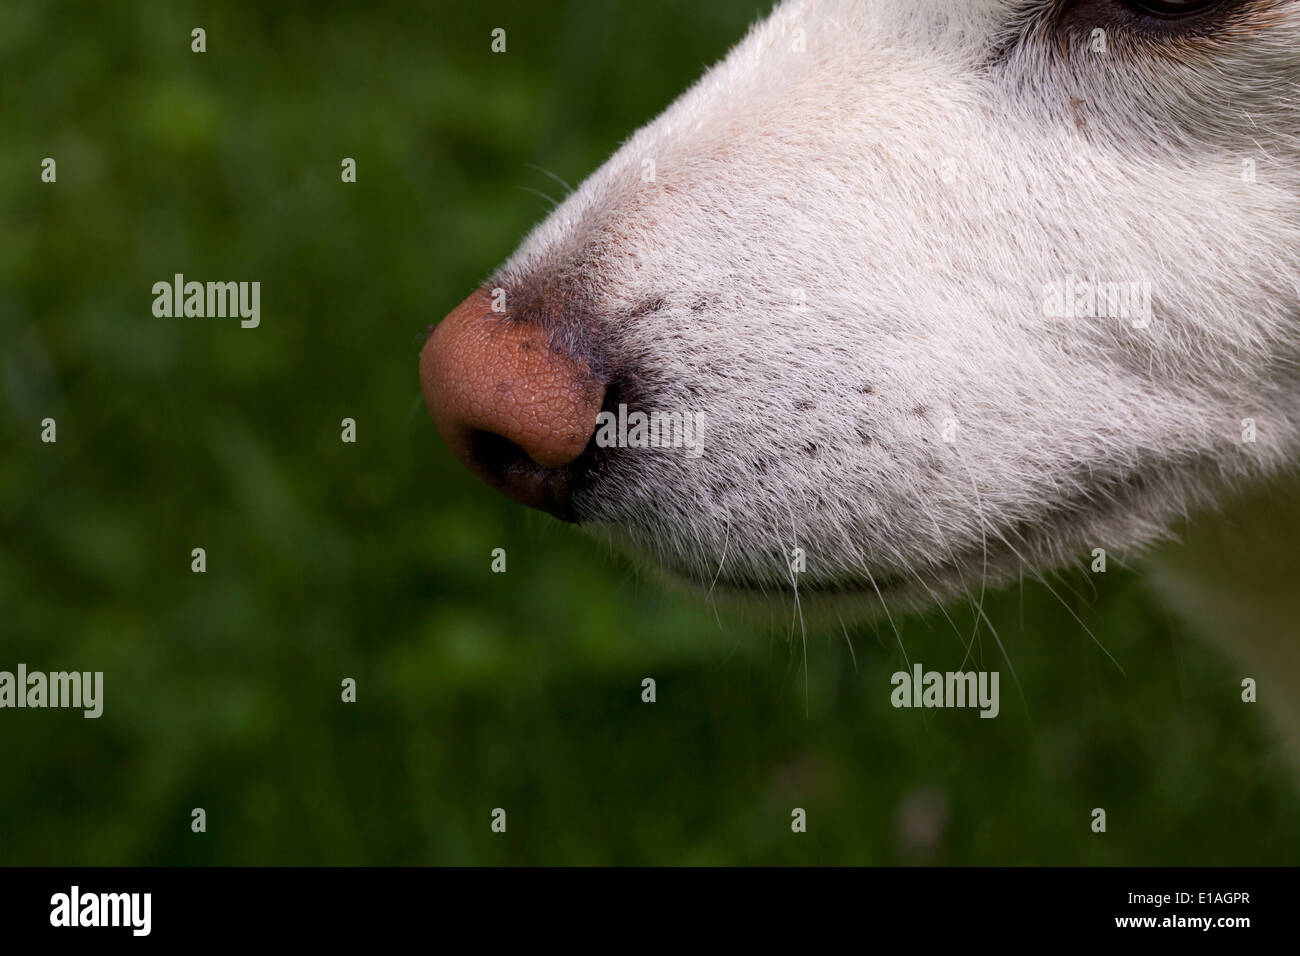 Closeup of a dog's snout Stock Photo